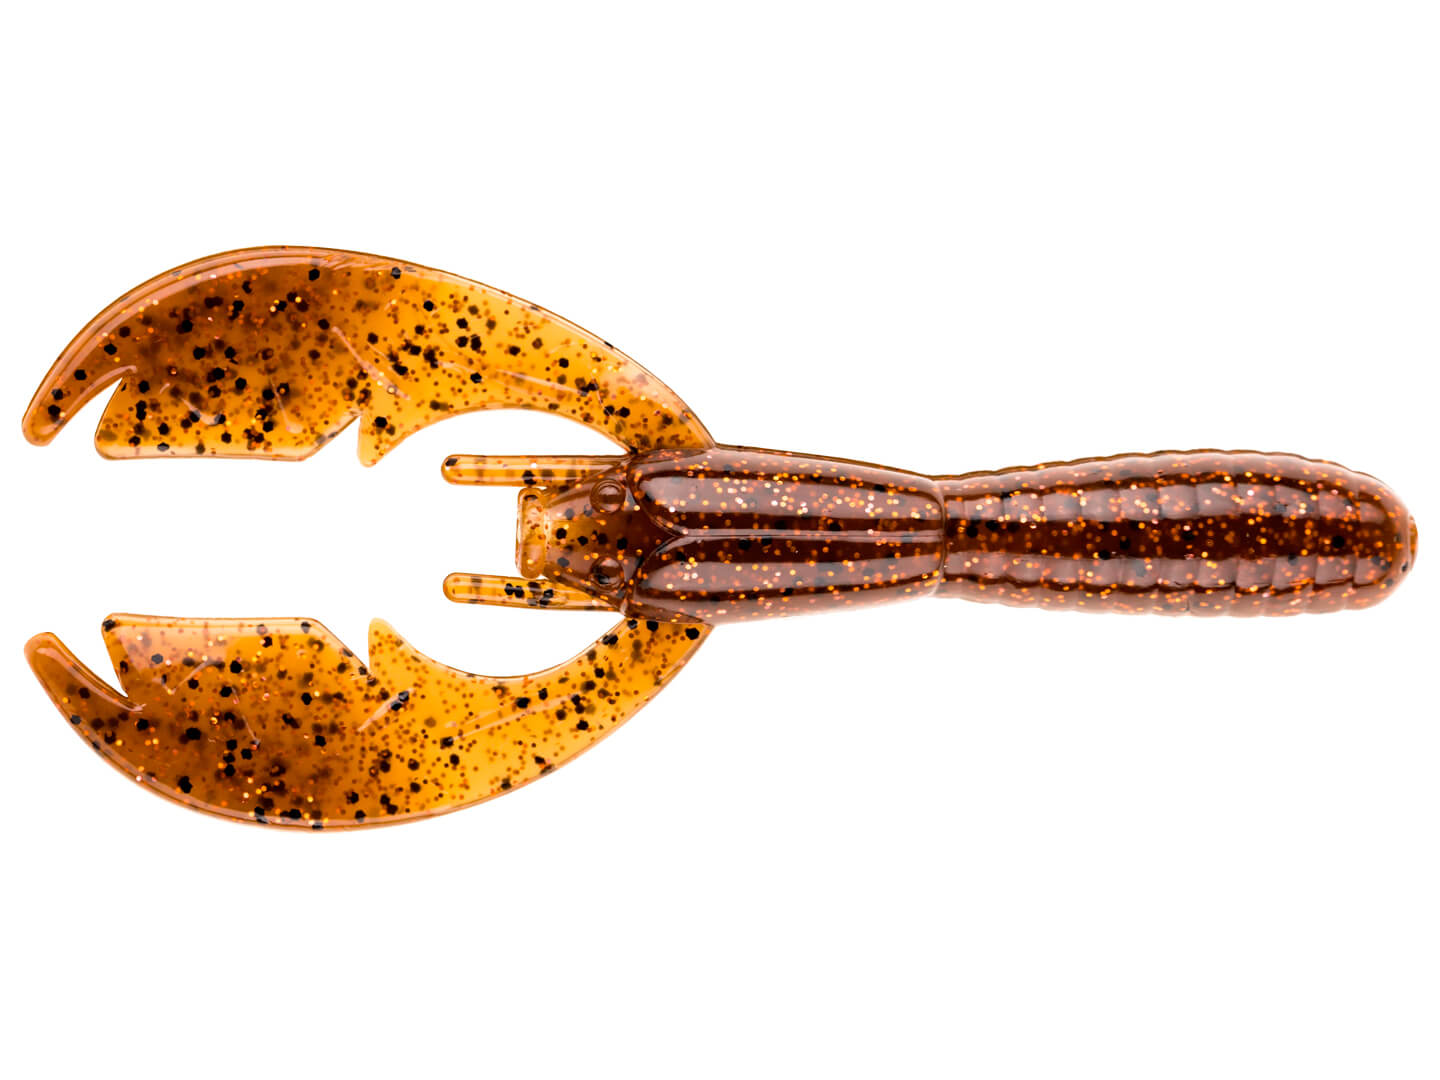 NetBait Baby Paca Craw - Crawfish